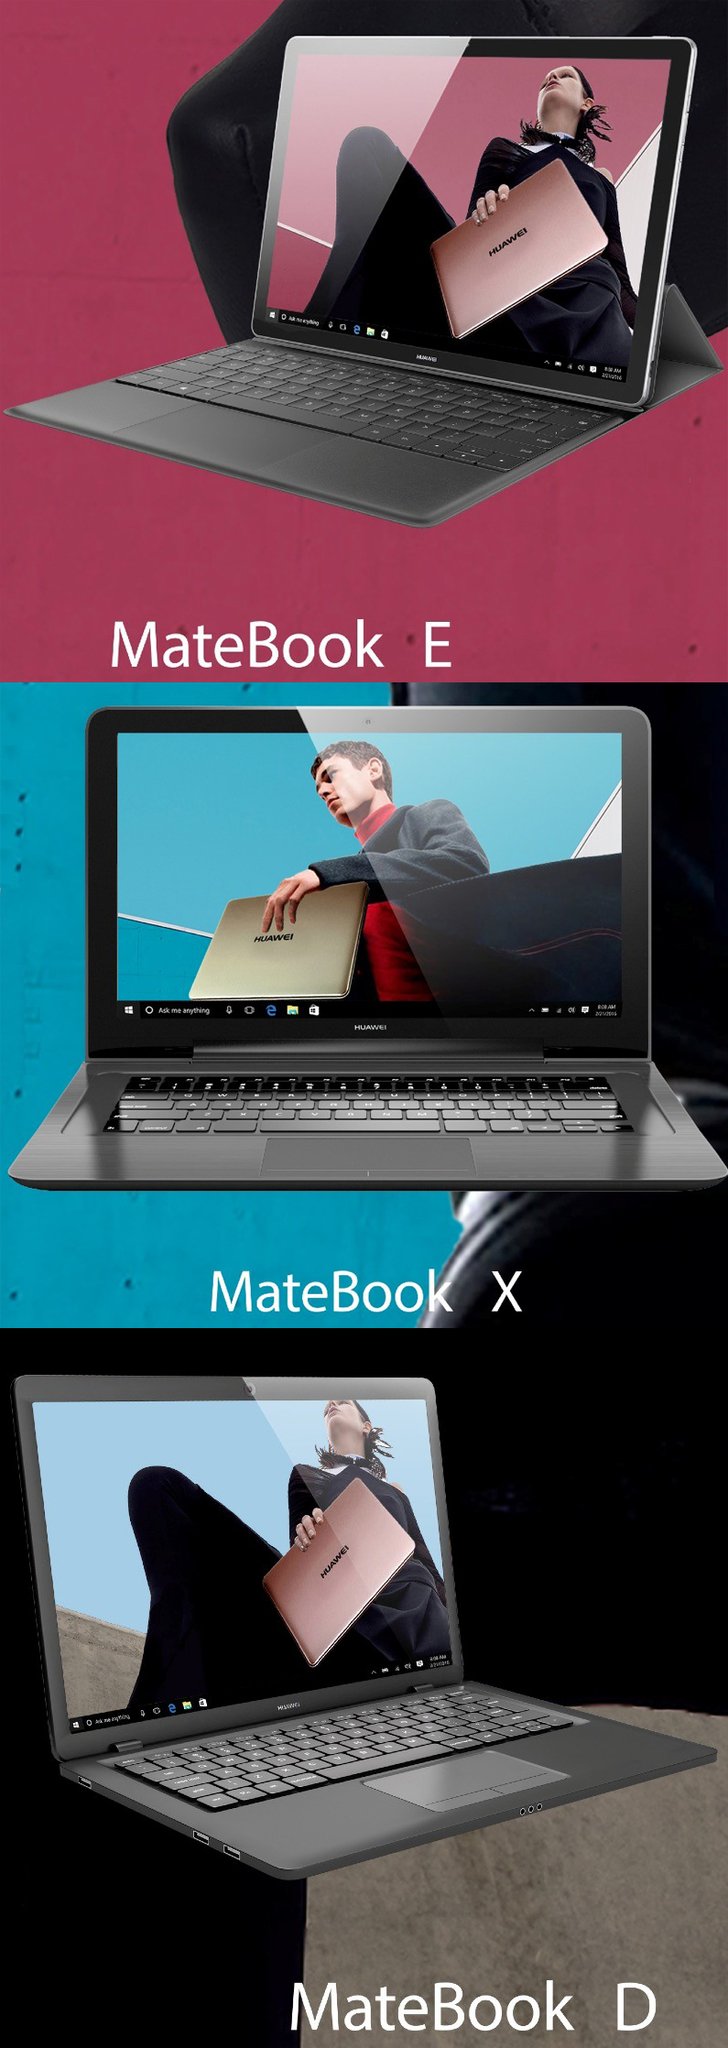 Грядущие Huawei Matebook E, X и D будут совершенно разными устройствами, опубликованы их официальные изображения